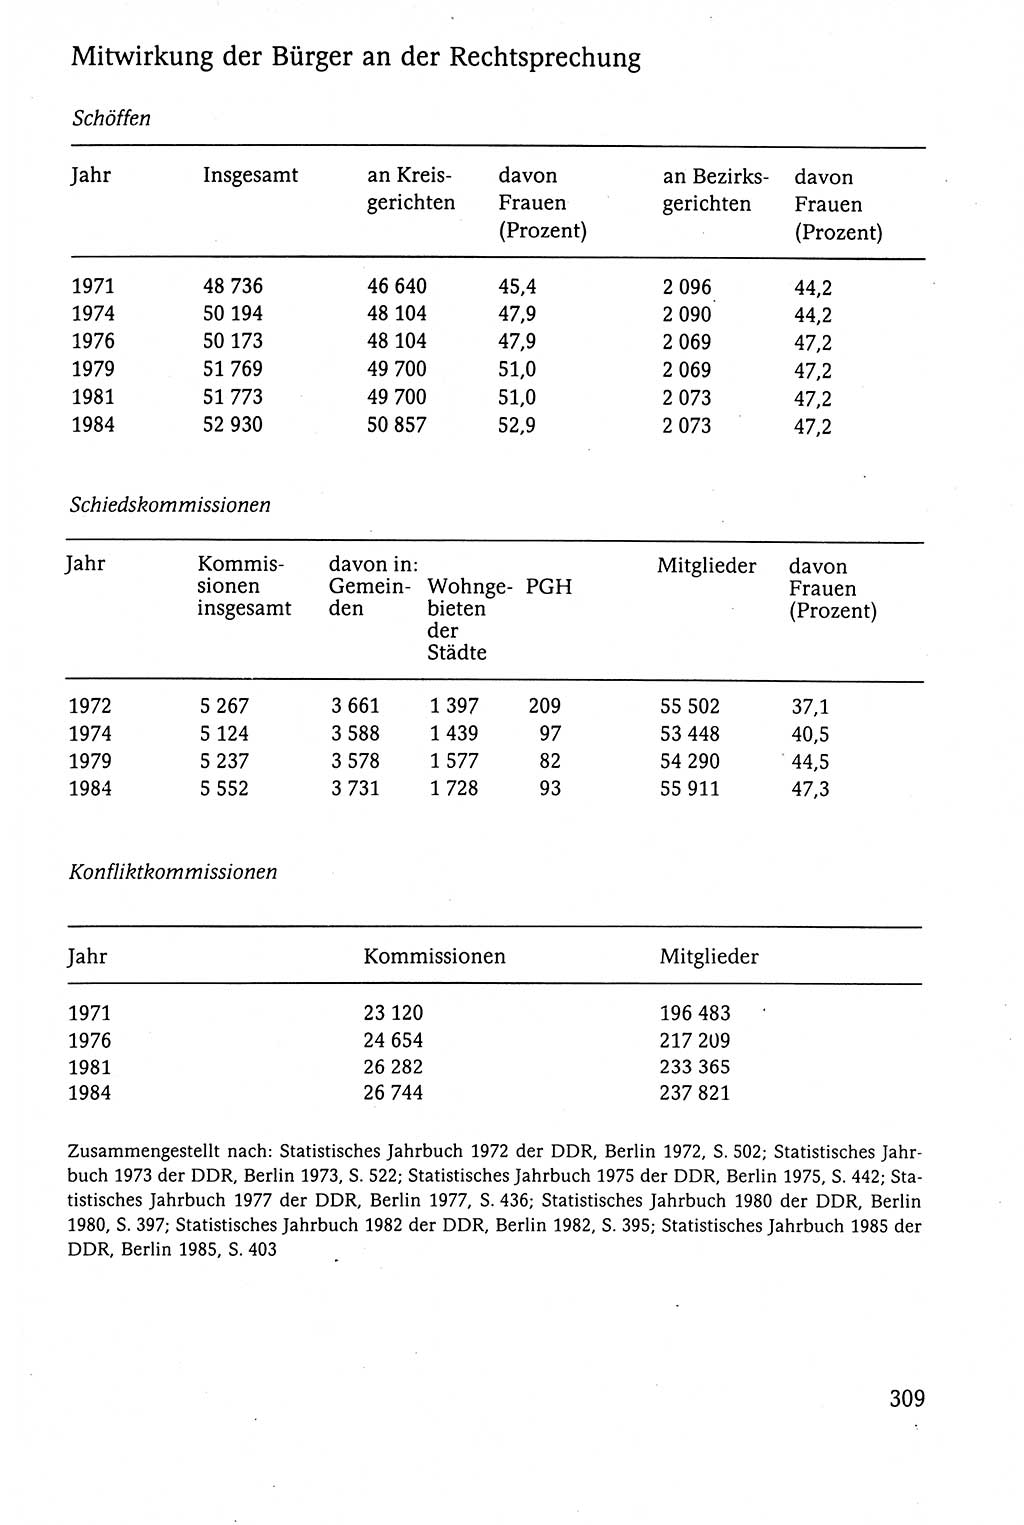 Der Staat im politischen System der DDR (Deutsche Demokratische Republik) 1986, Seite 309 (St. pol. Sys. DDR 1986, S. 309)